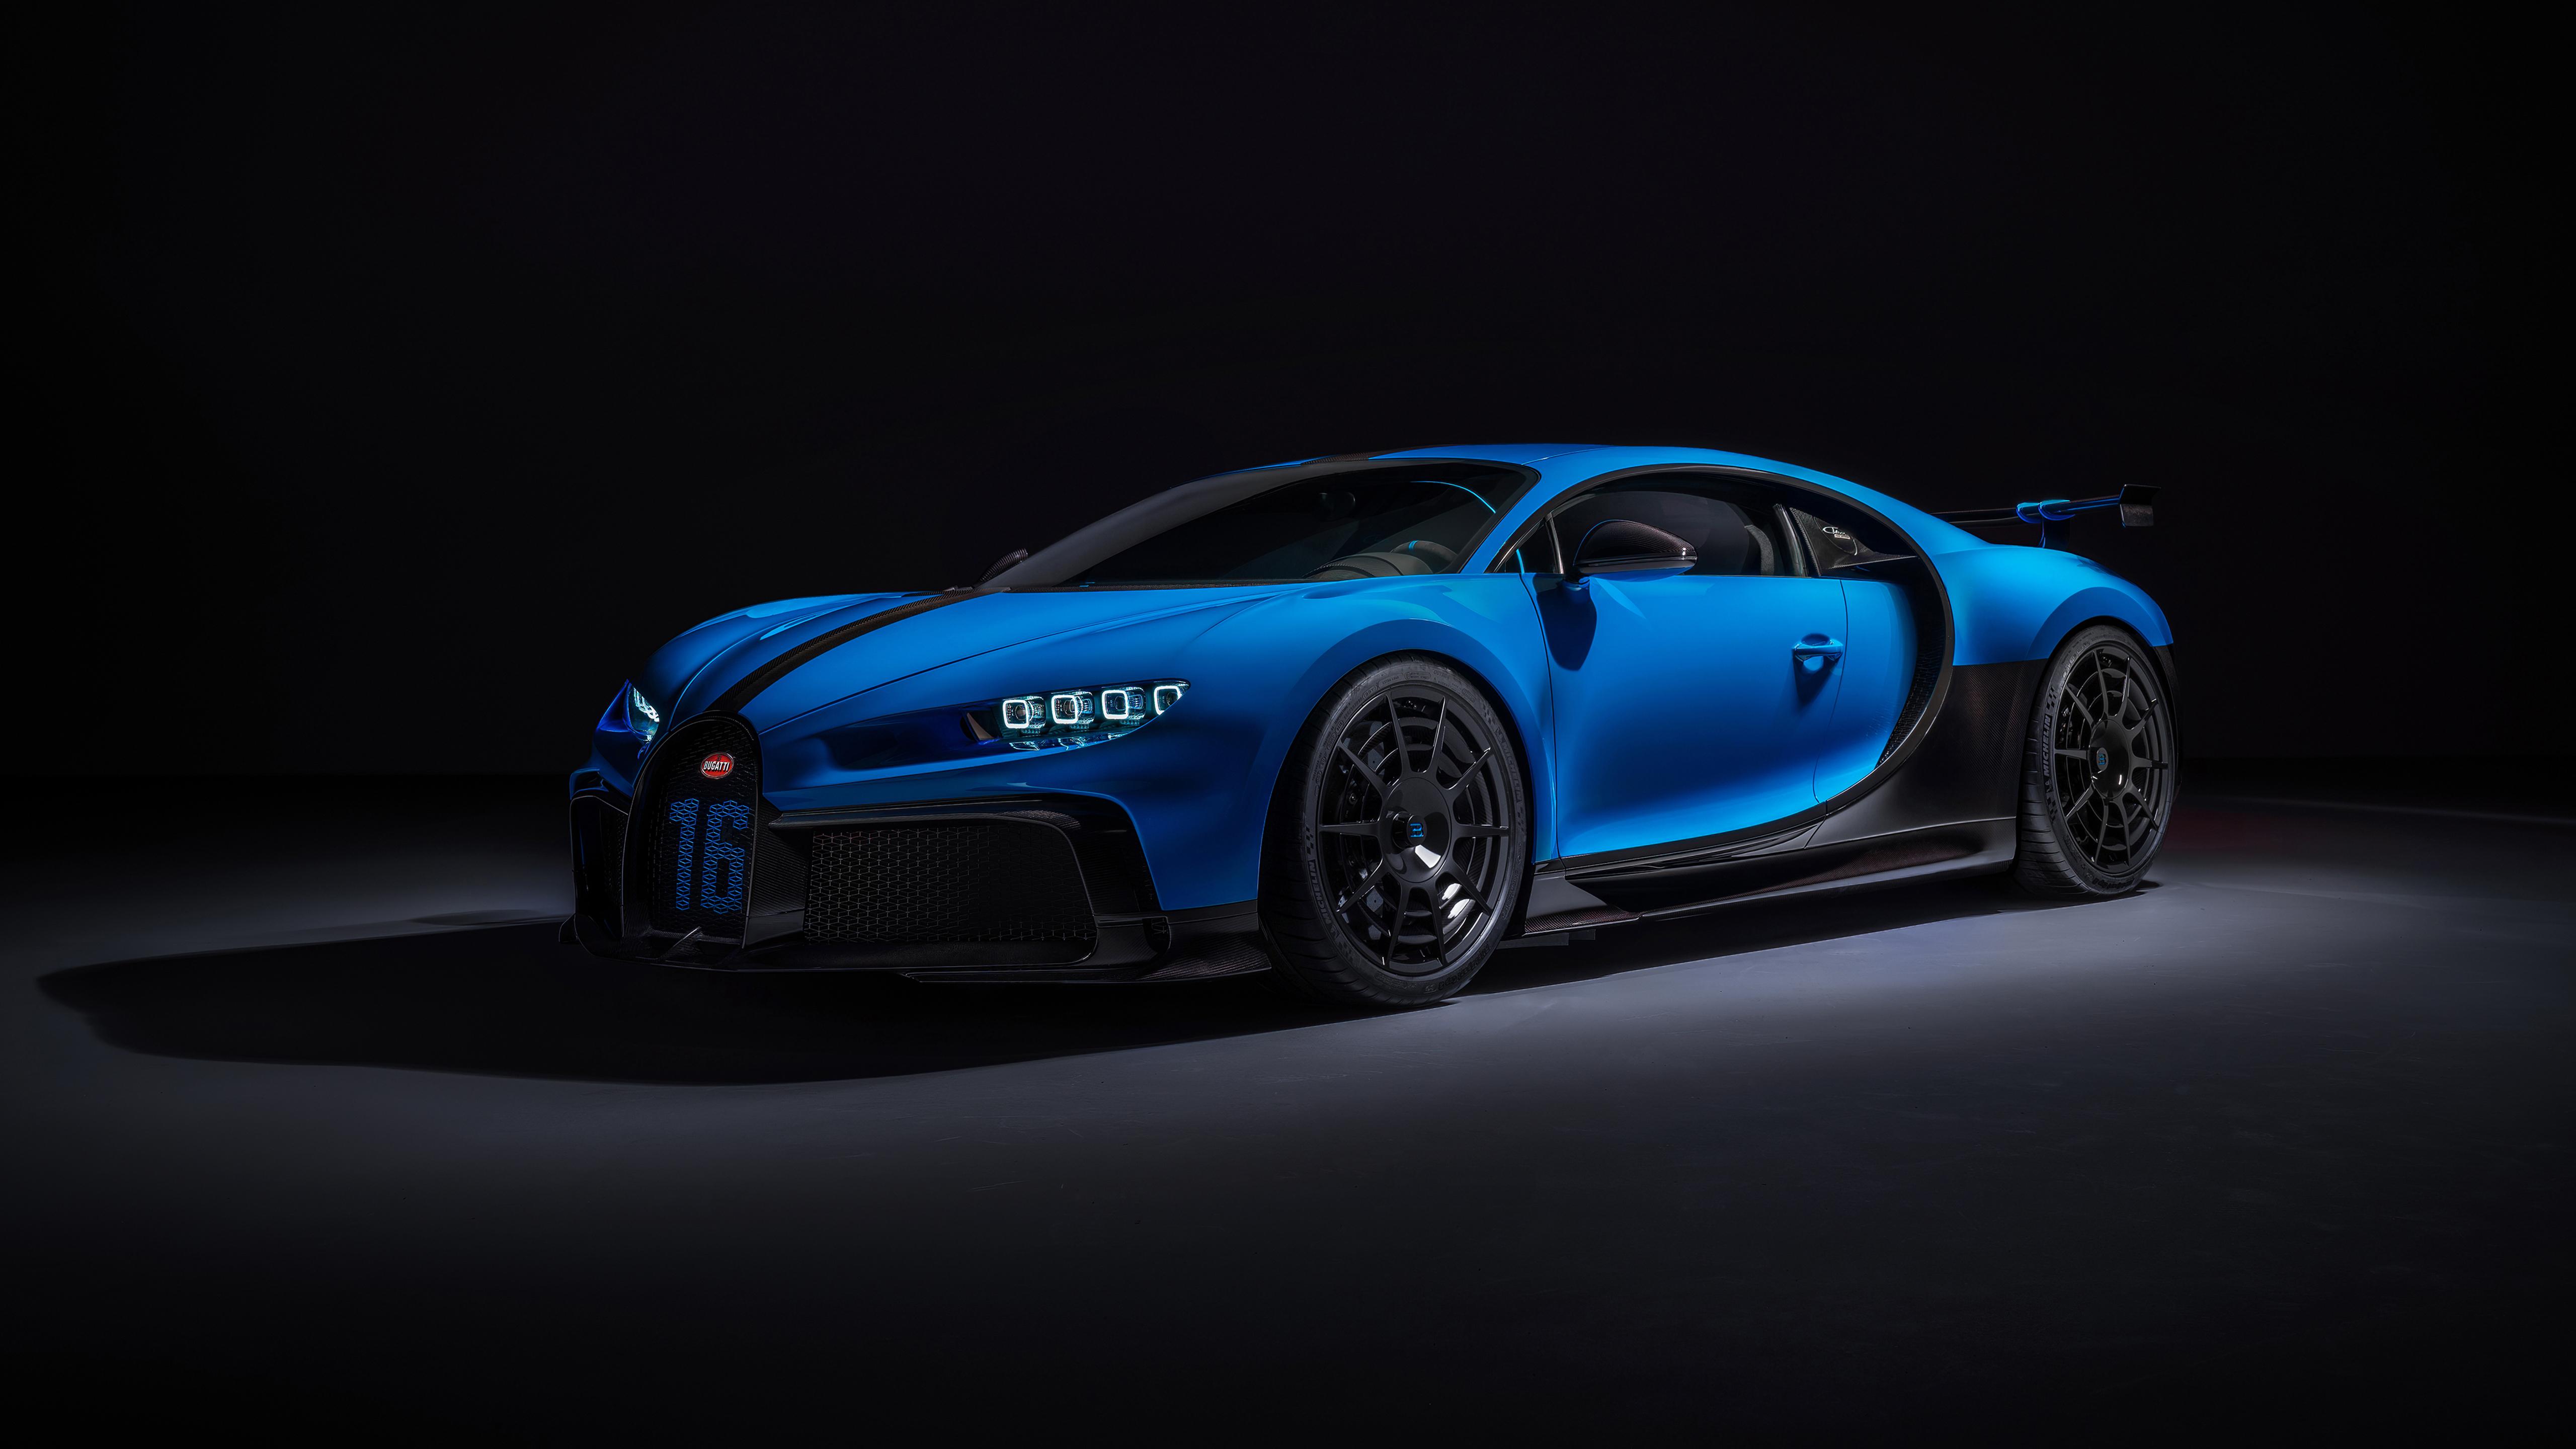 BUGATTI CHIRON 2020 MOBILE WALLPAPER  Bugatti chiron Bugatti Super car  bugatti